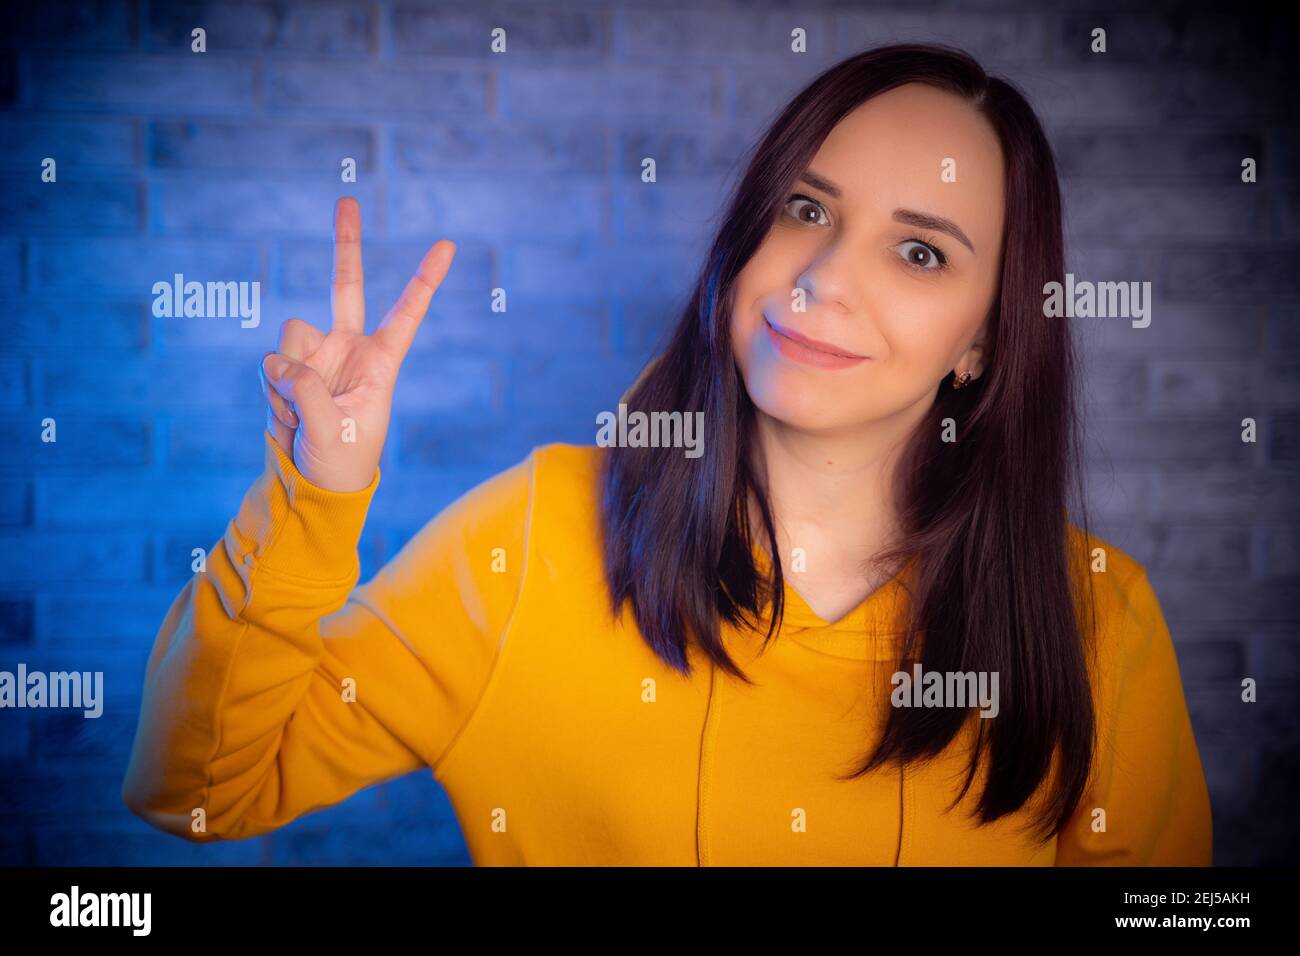 Porträt einer jungen Frau lächelnd und zeigt Daumen nach oben. Nahaufnahme der glücklichen Brünette zeigt Geste der Zustimmung auf hintergrundbeleuchteten Hintergrund Stockfoto